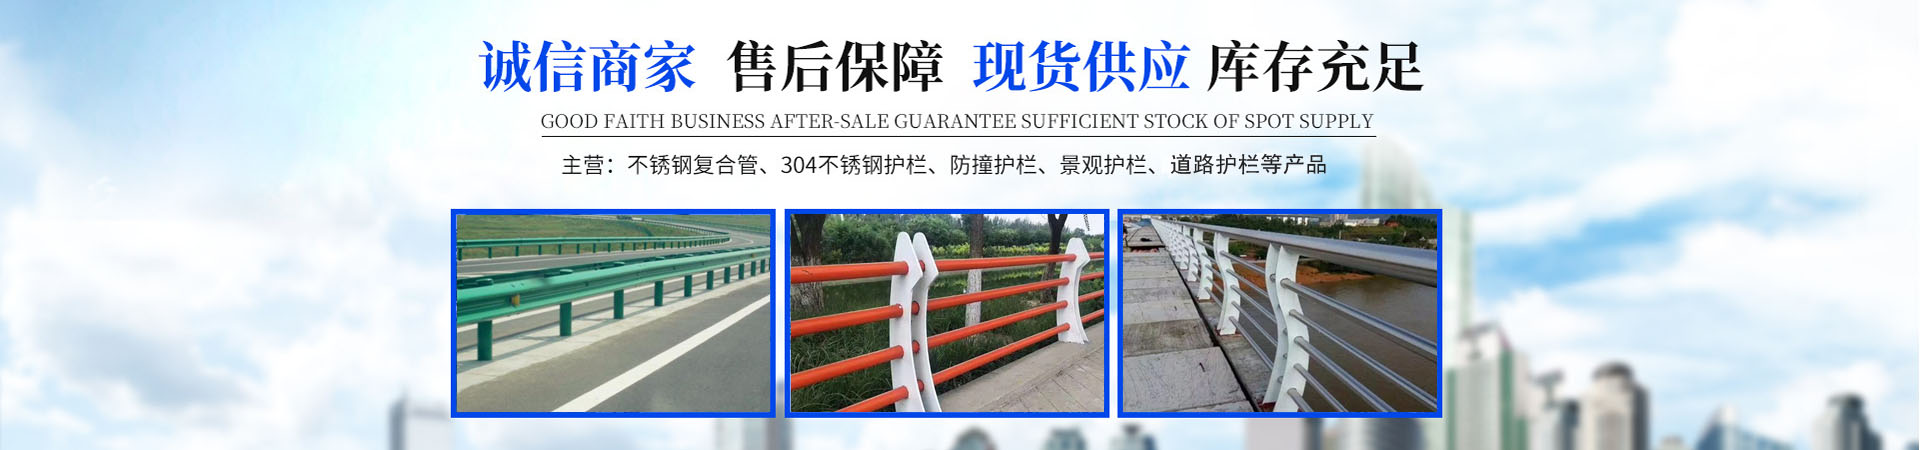 不锈钢景观护栏、重庆本地不锈钢景观护栏、重庆、重庆不锈钢景观护栏